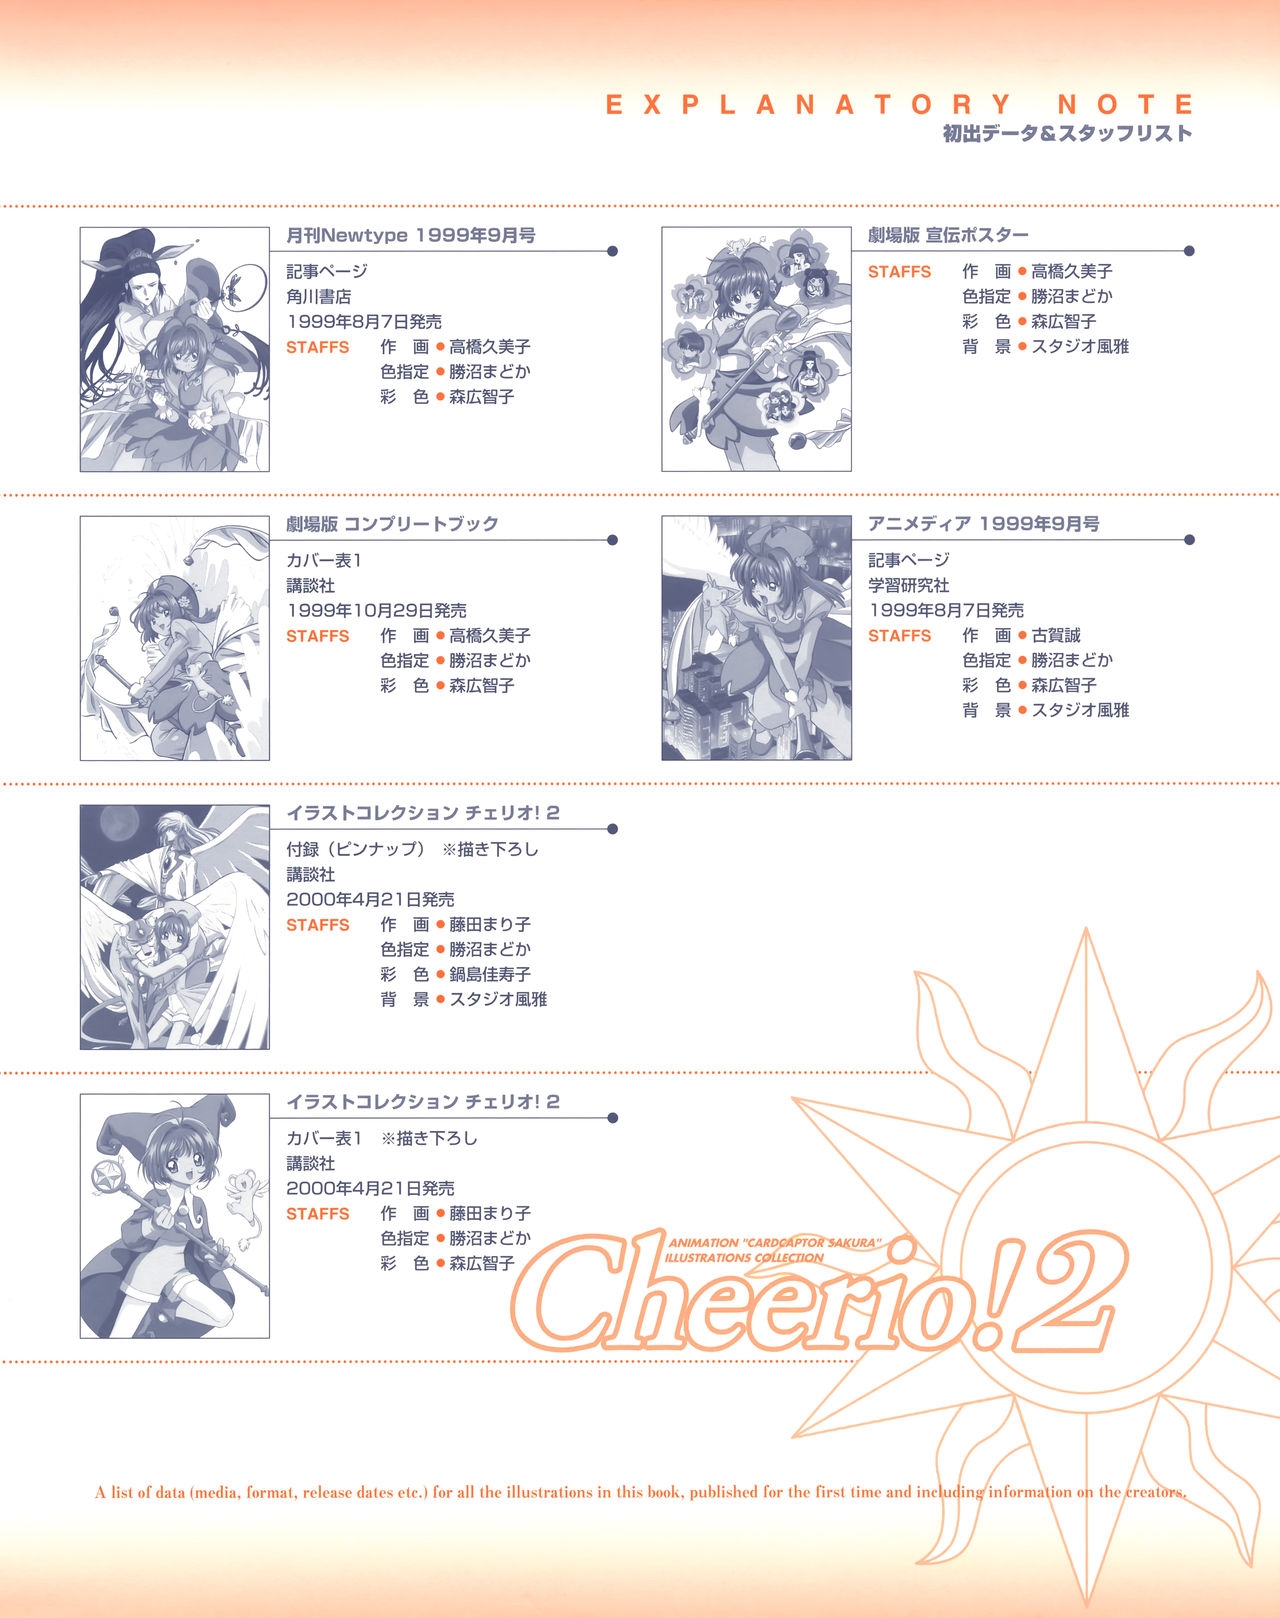 Cheerio! 2 - TV Animation Cardcaptor Sakura Illust Collection 88